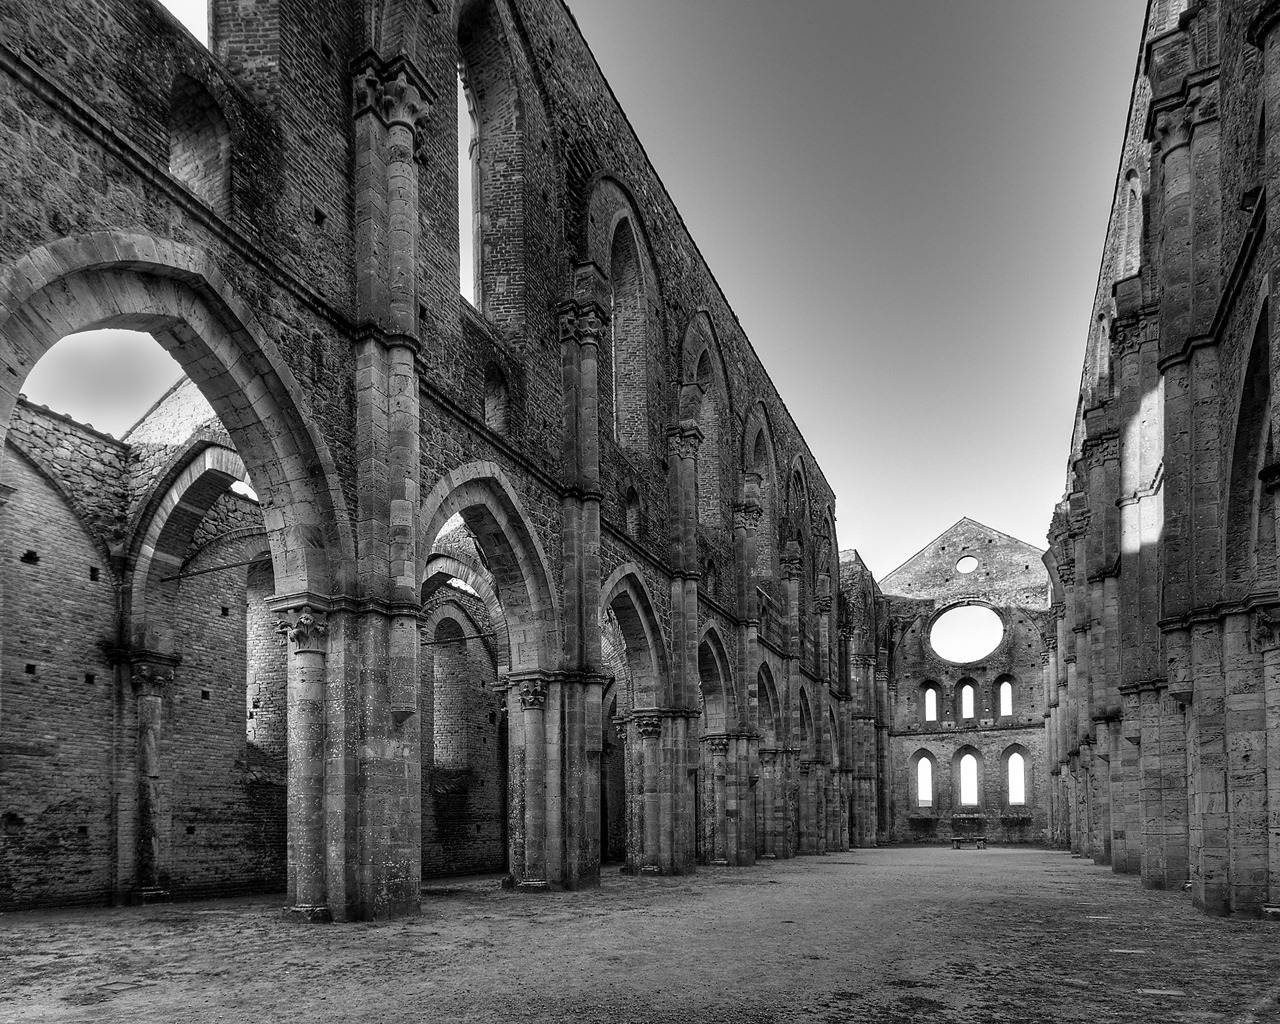 San Galgano Abbey for 1280 x 1024 resolution